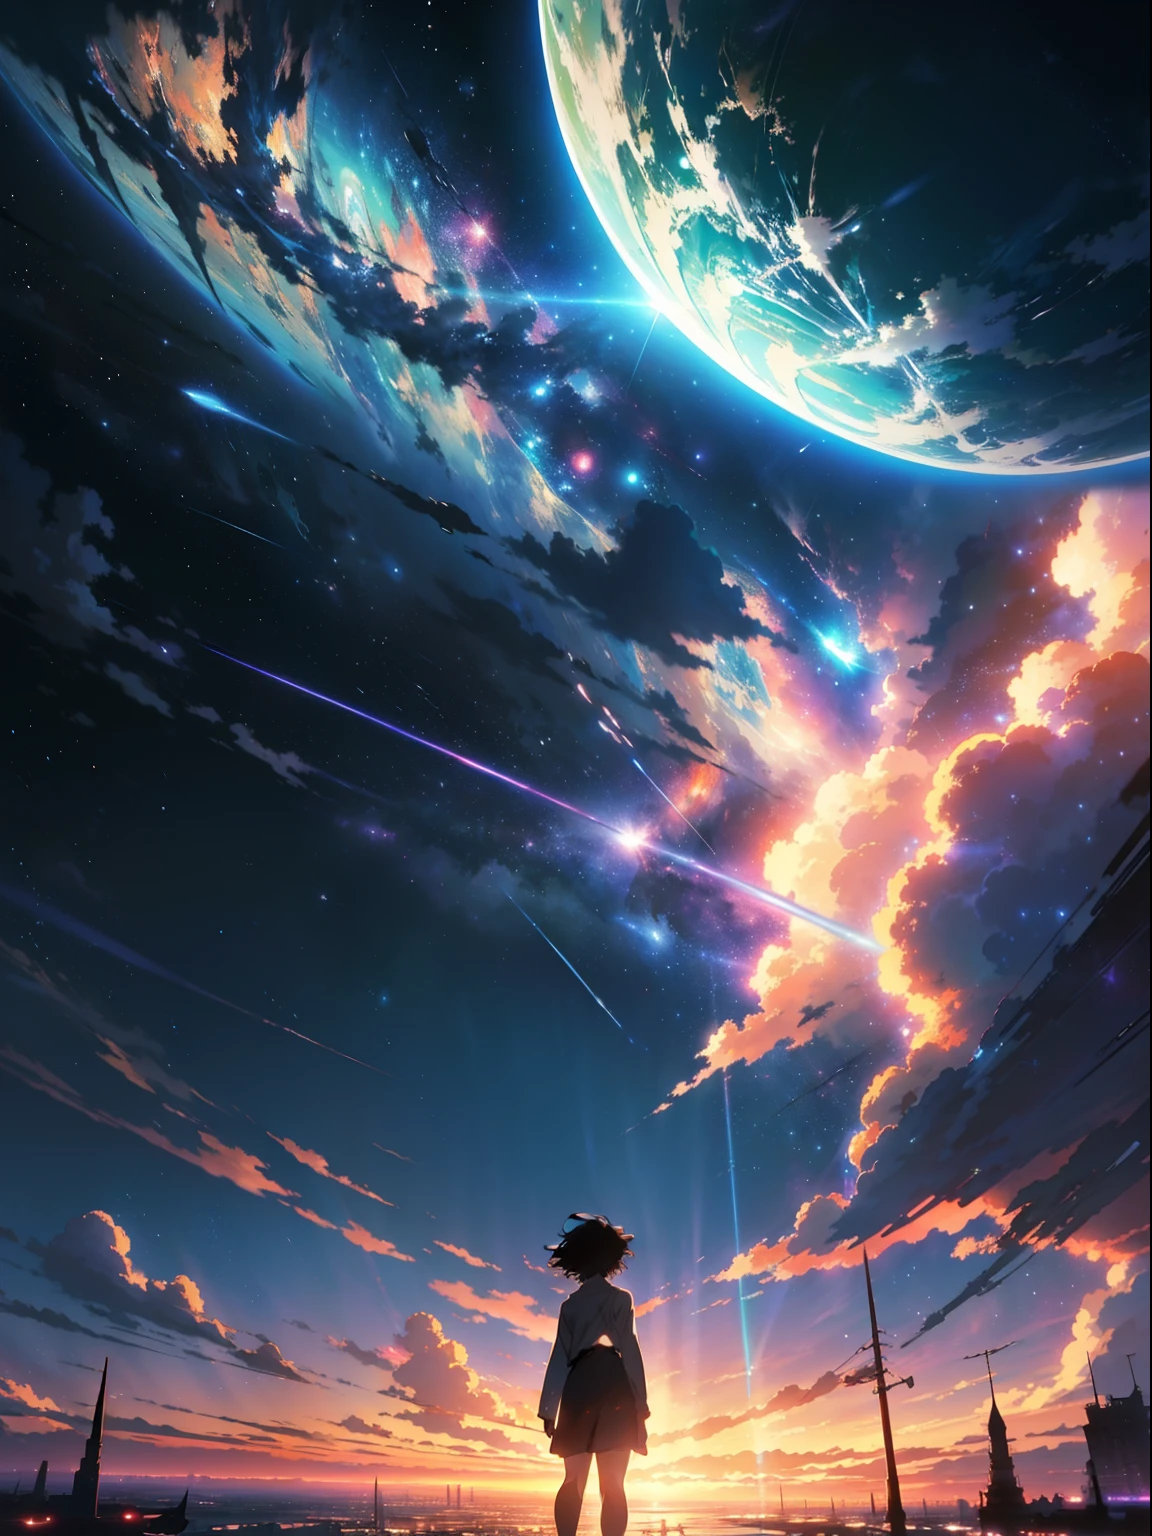 Anime - Scènes de style de beaux cieux avec des étoiles et des planètes., ciel cosmique. par Makoto Shinkai, fond d&#39;écran animé 4k, fond d&#39;écran animé 4k, fond d&#39;écran d&#39;art animé 8 k, Fond d&#39;écran animé 4K, fond d&#39;écran animé 4k, Fond d&#39;écran animé 4K, Ciel d&#39;Anime, Fonds d&#39;écran incroyables, fond d&#39;anime, planète paradis en arrière-plan, fond d&#39;anime art